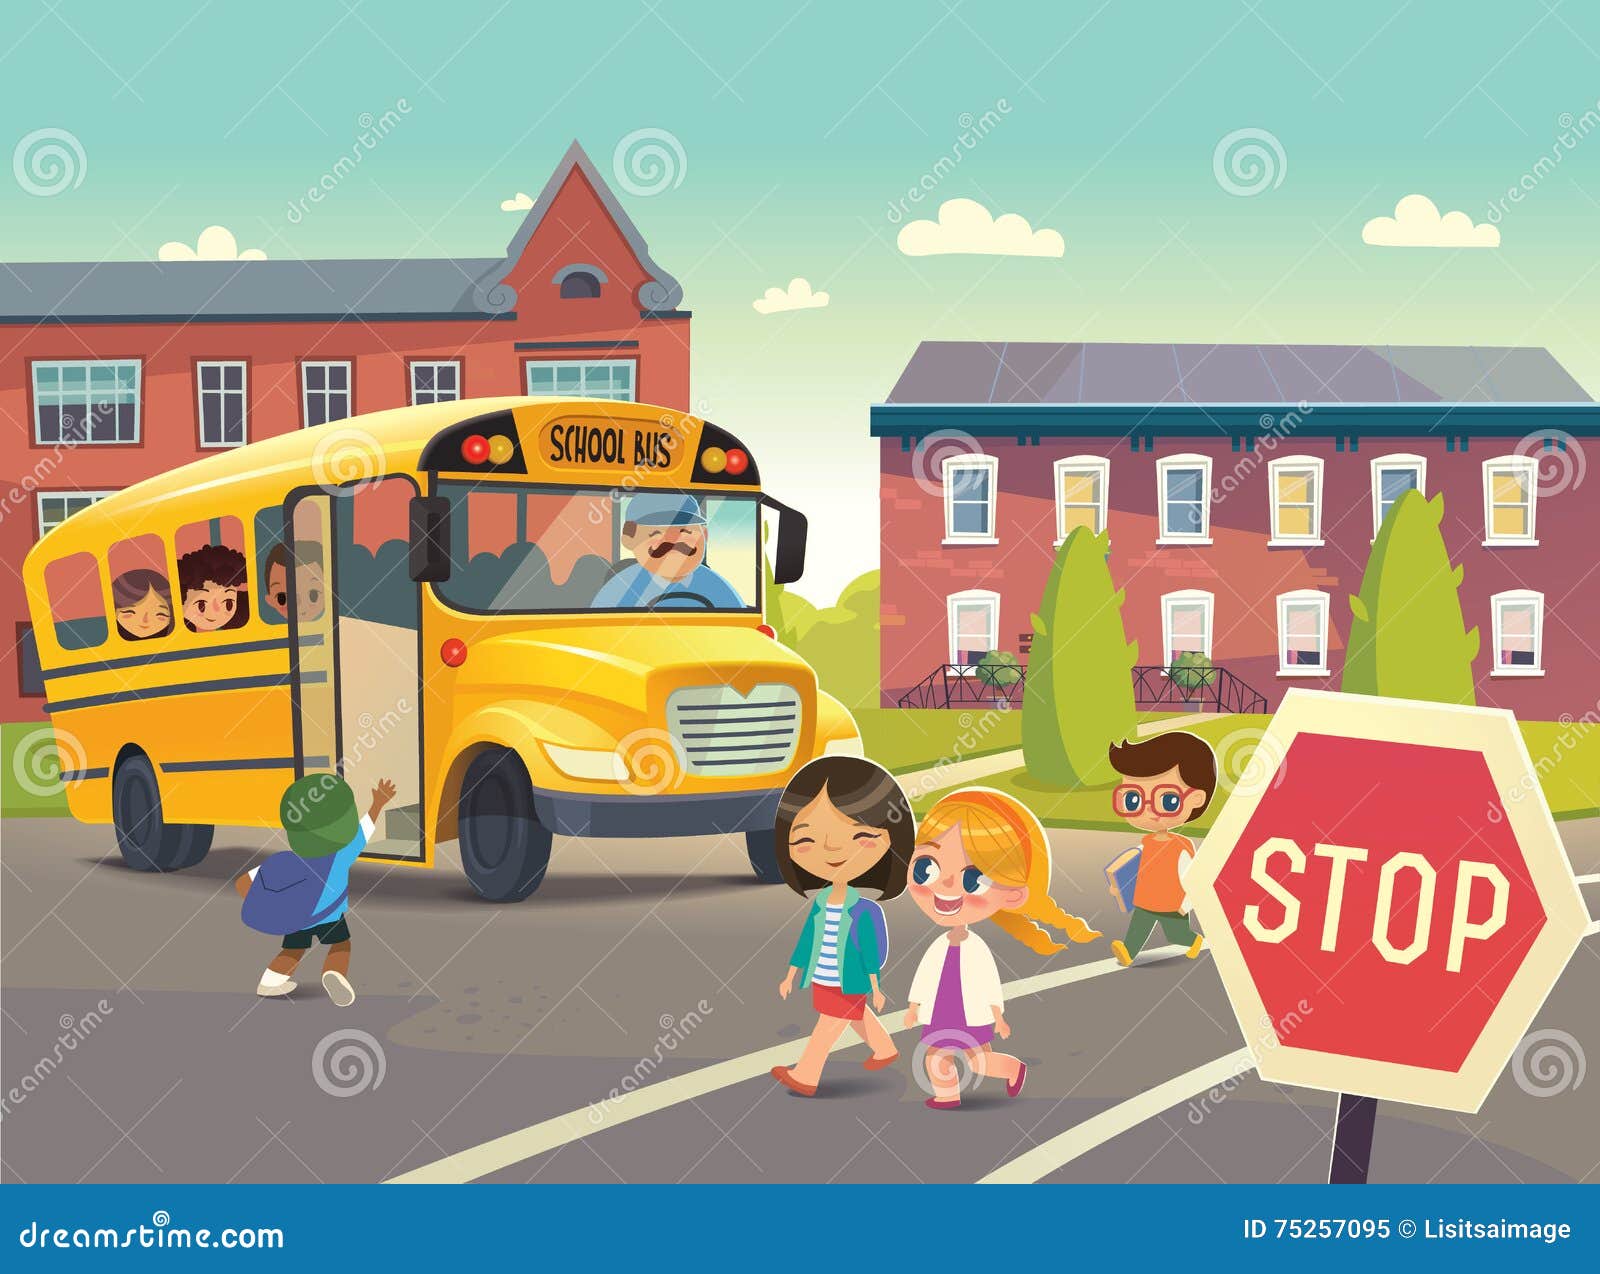 back to school.  depicting school bus stop